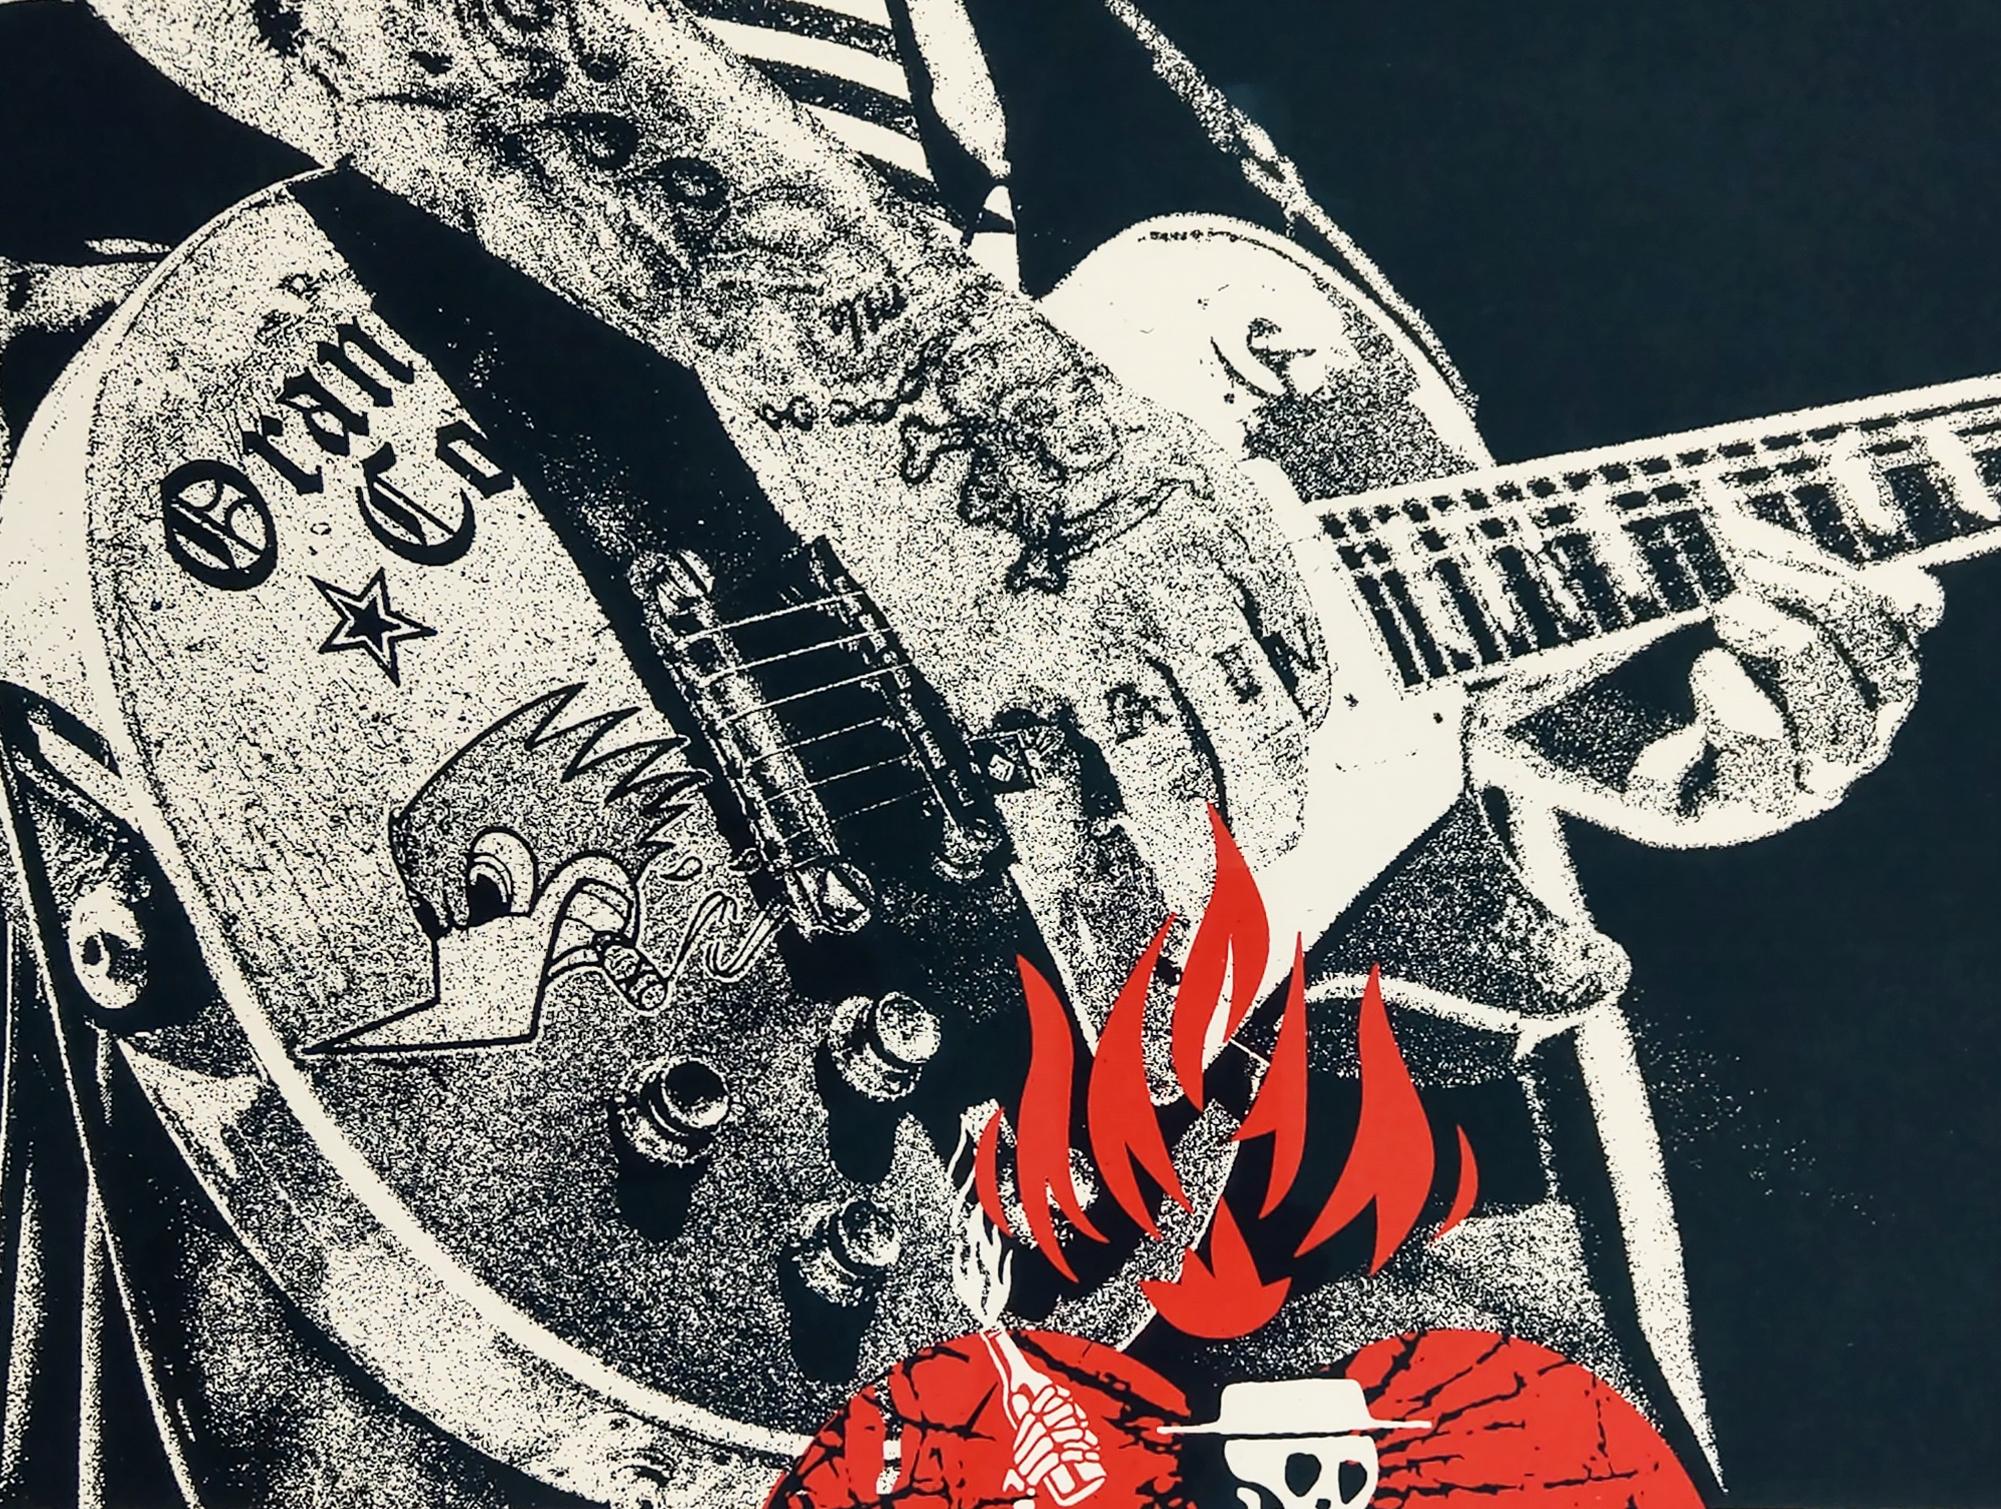 Social Distortion Shepard Fairey Sérigraphie 18 x 24″, édition signée et numérotée de 600 exemplaires.  Affiche de groupe des icônes du punk en tant que pionniers, Social Distortion de 2019. 

"J'ai entendu Social Distortion pour la première fois en